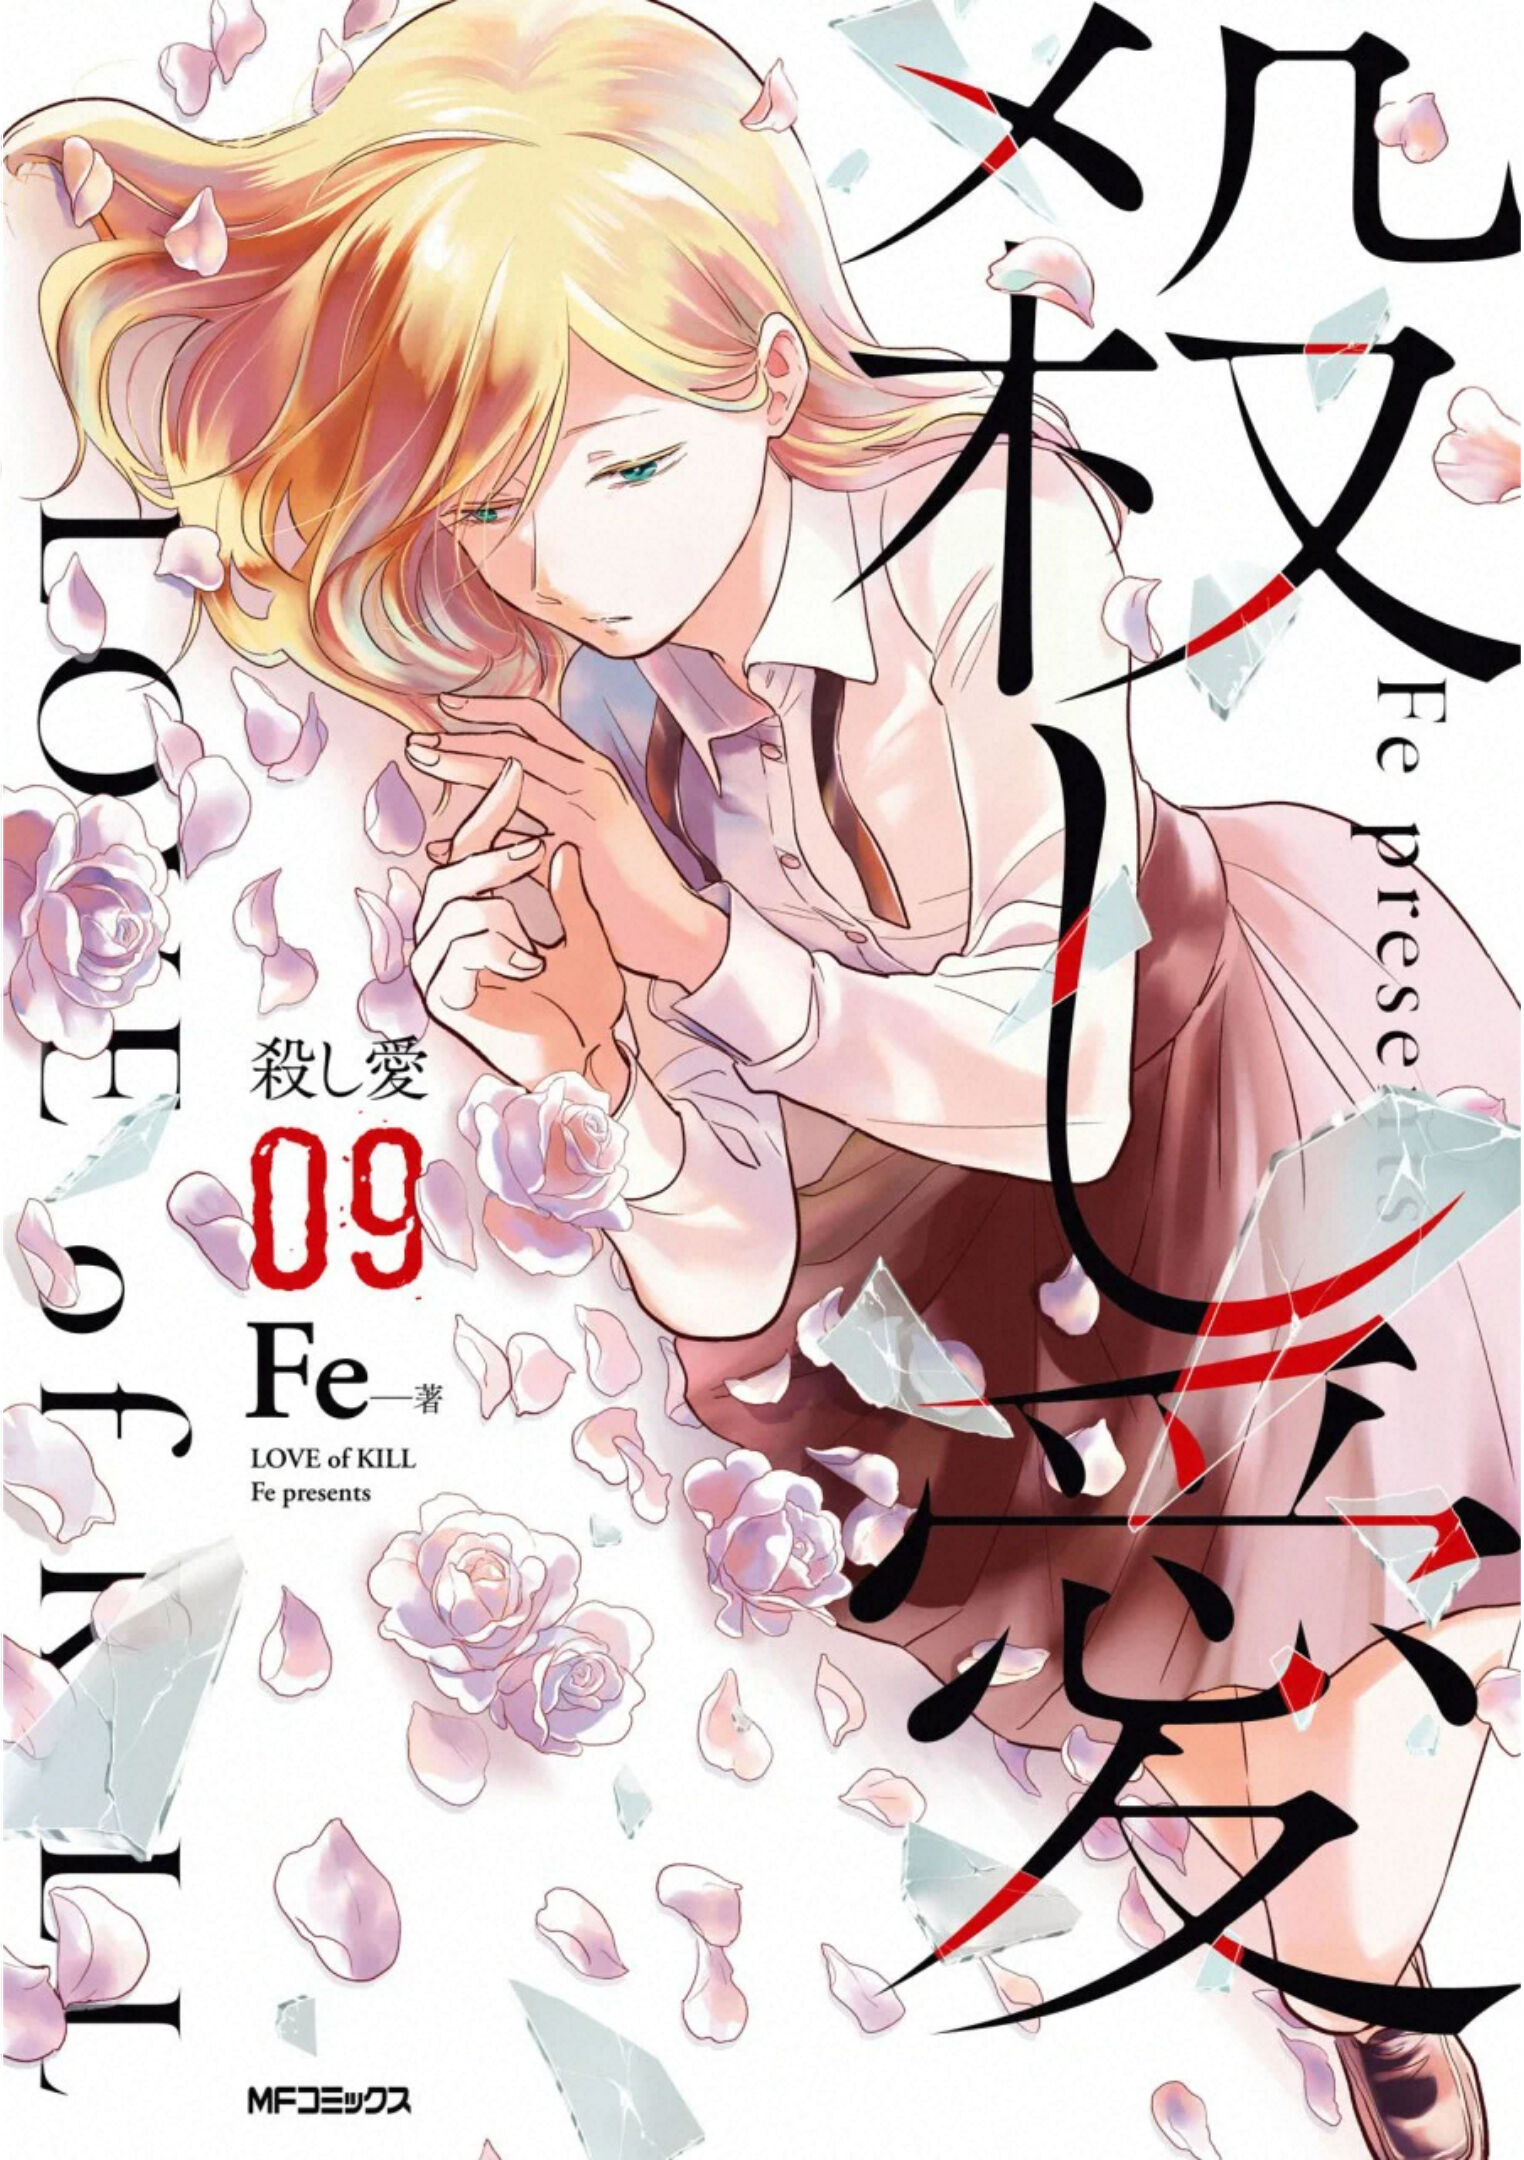 Koroshi Ai Manga volume 8